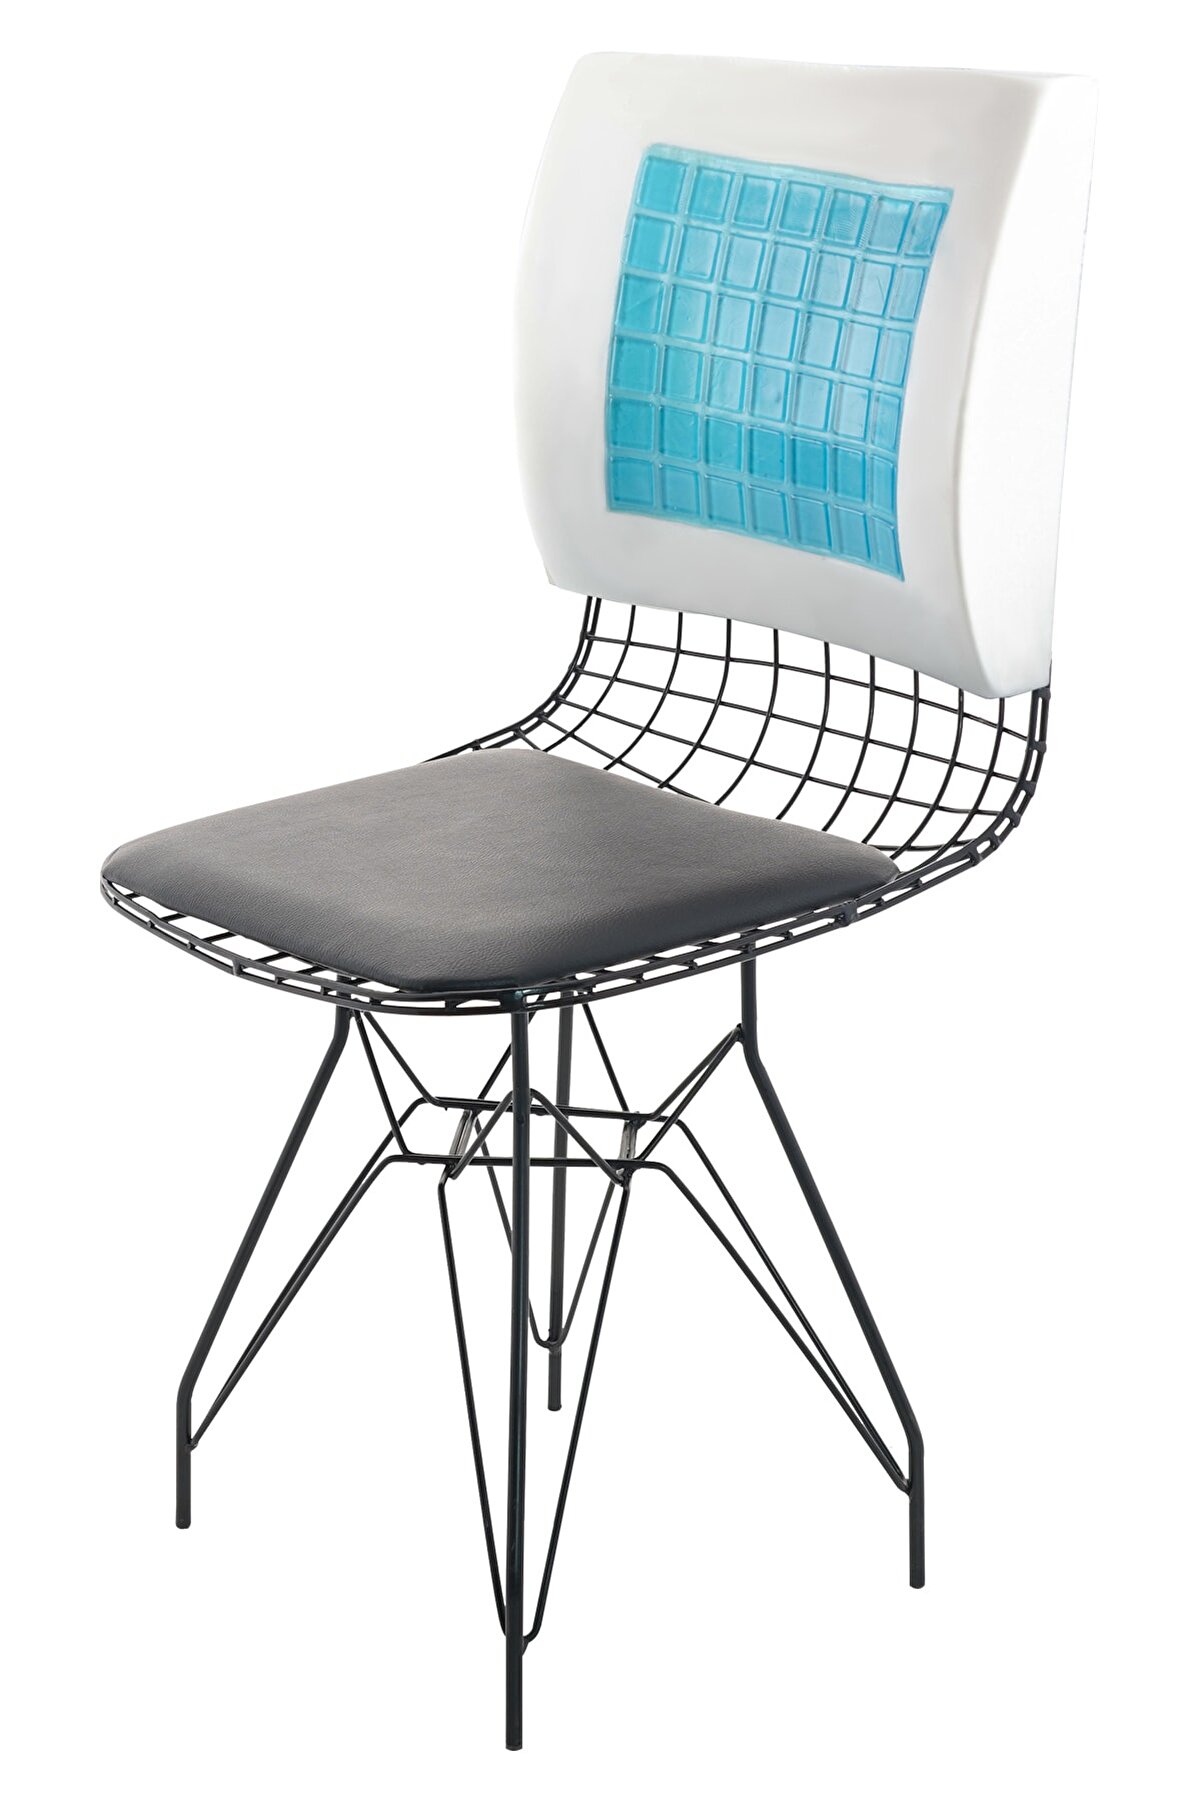 Viscofoam Terletmeyen Ortopedik Bel Yastığı Ofis Sandalye Araç Koltuk Bel Destek Yastığı Visco Bel Yastığı